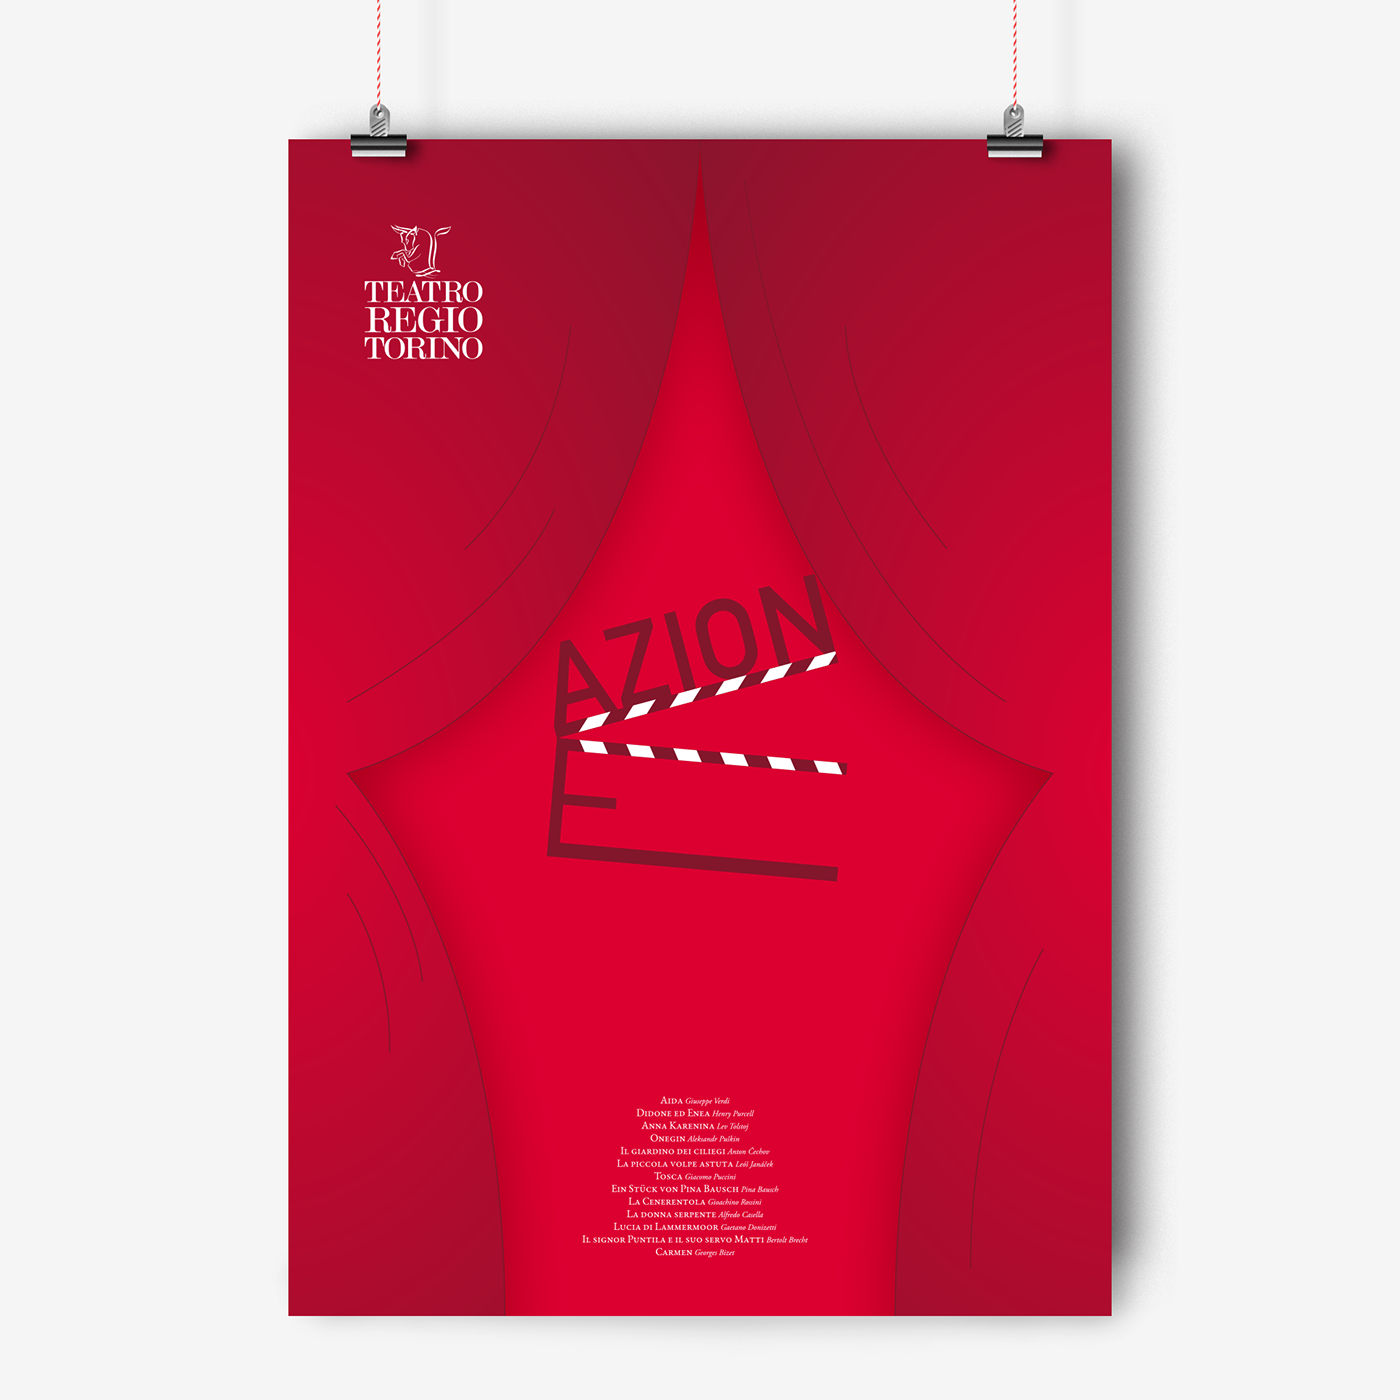 Theatre teatro regio Poster Design poster inspiration ad campaign Theatre Show  teatro regio torino Cinema Show